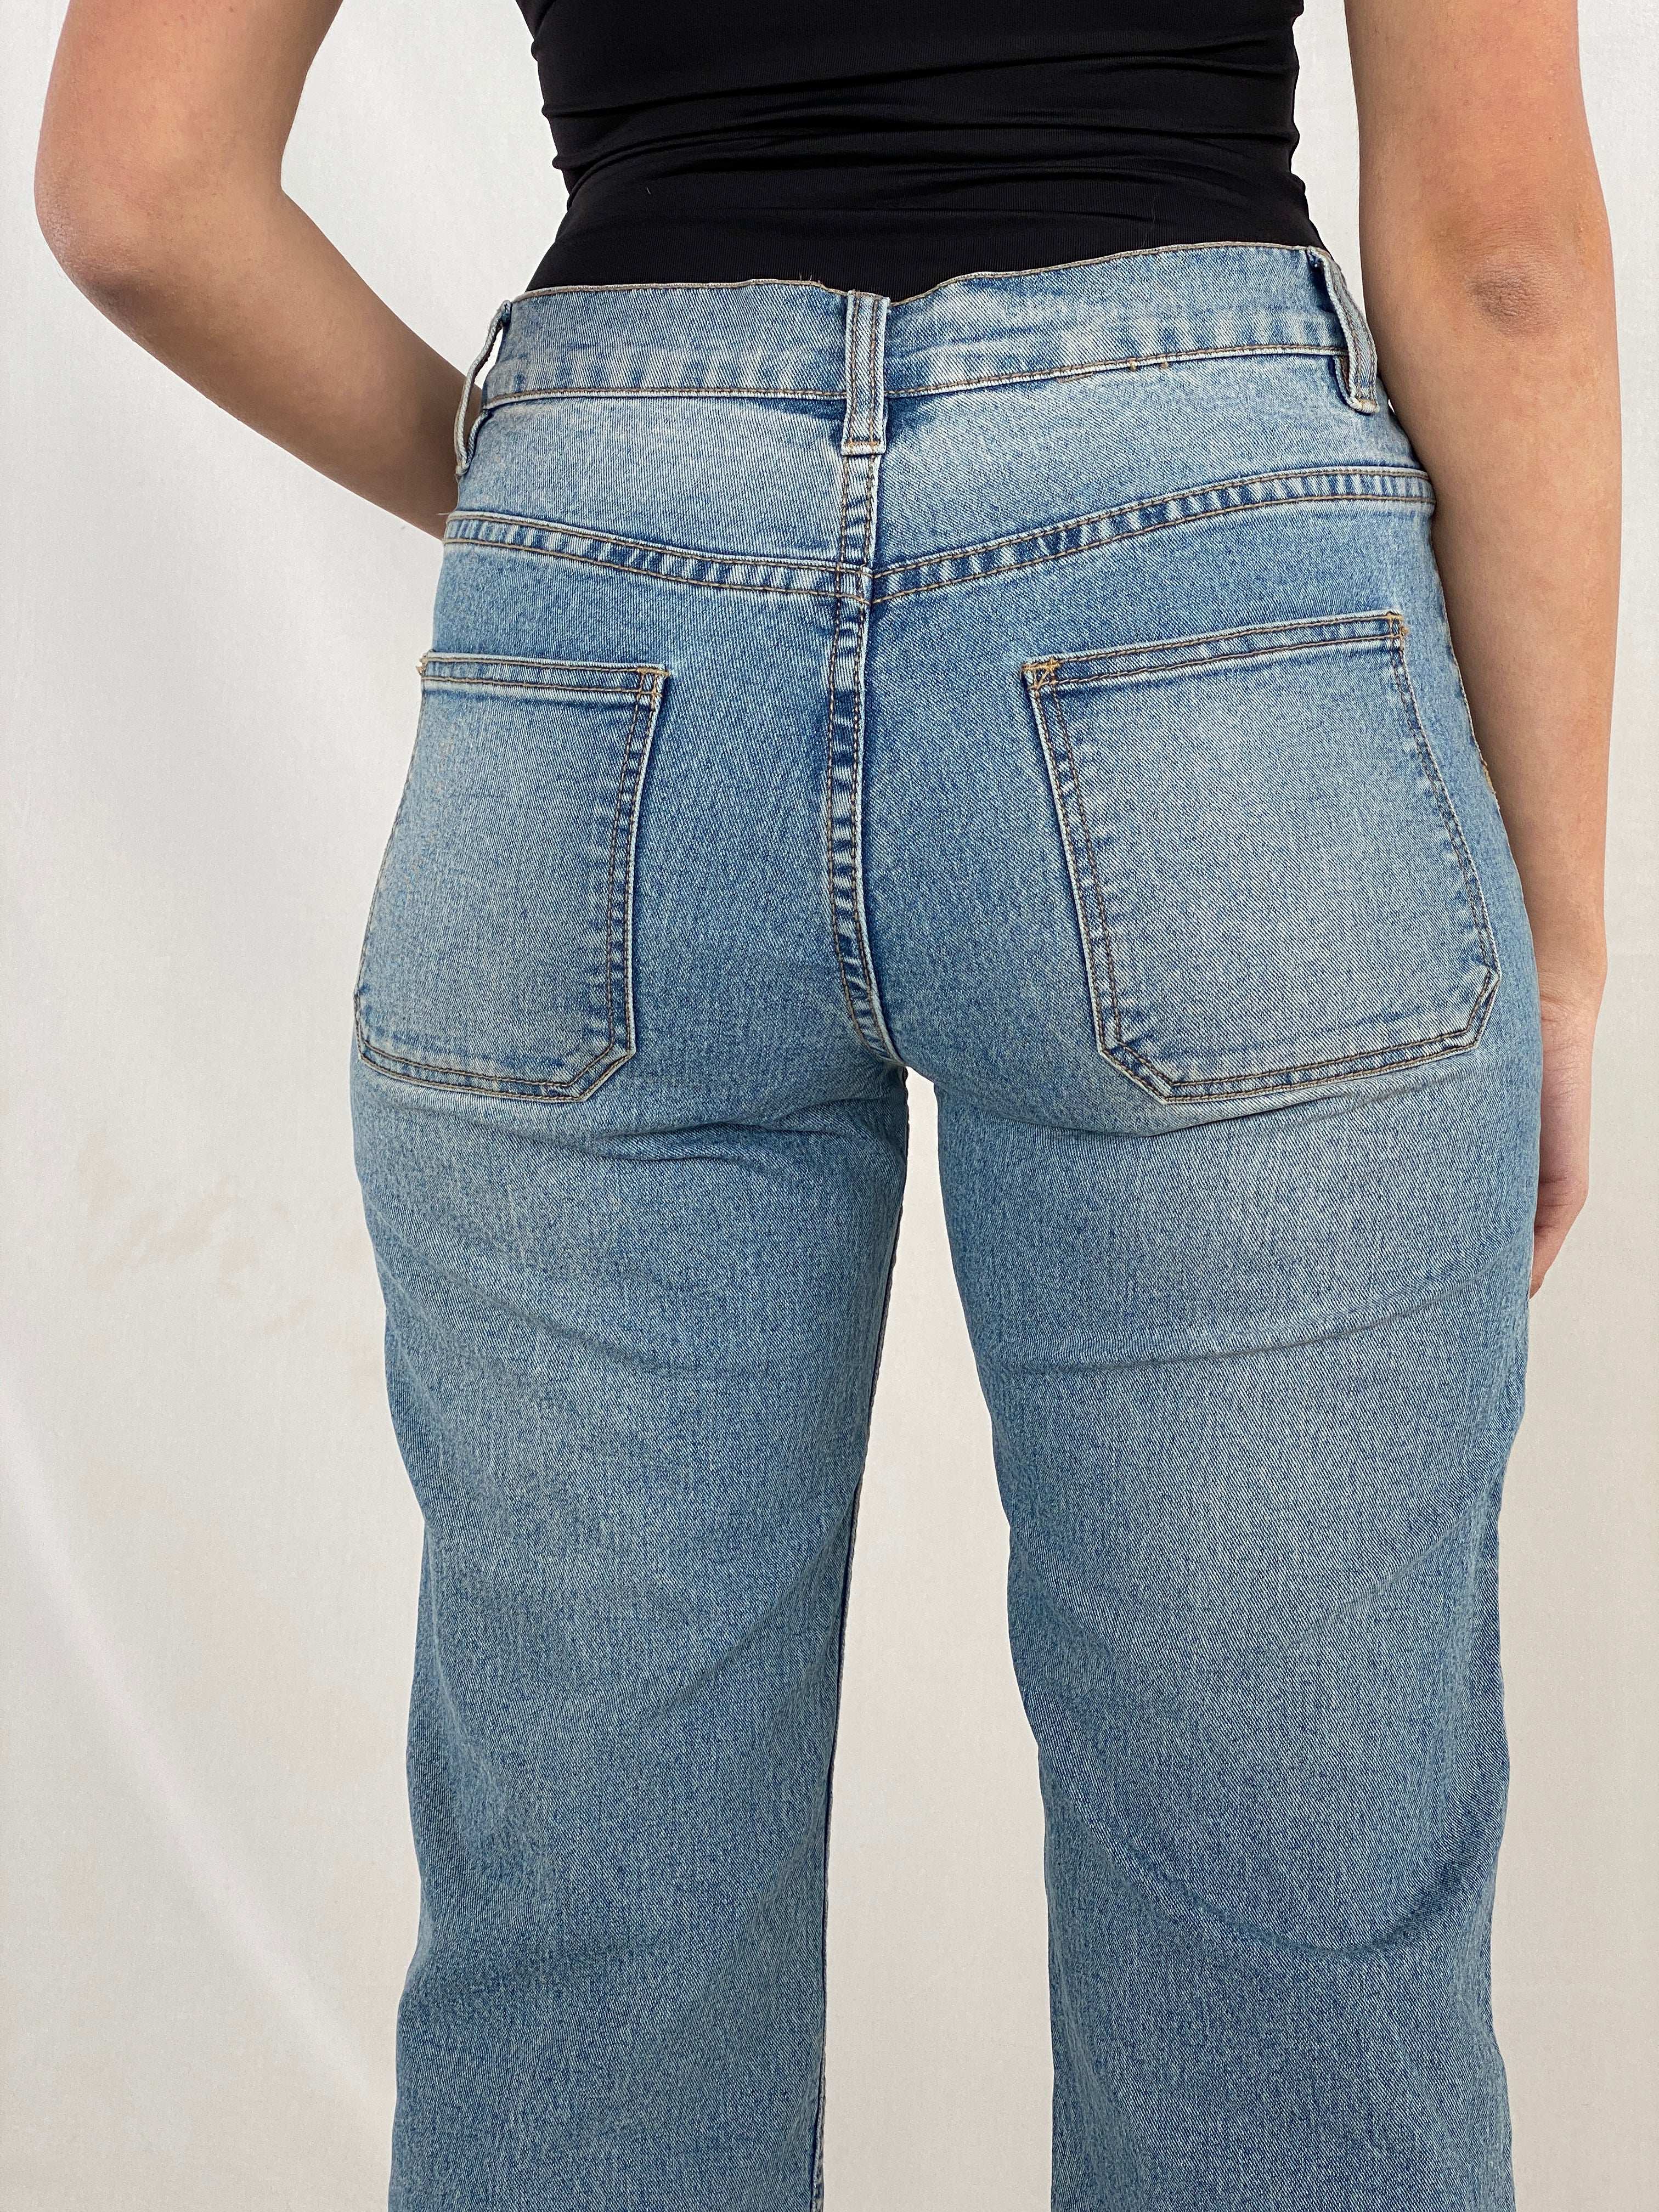 Vintage Y2K Jeans - Balagan Vintage Jeans 00s, high waisted jeans, jeans, Juana, NEW IN, vintage jeans